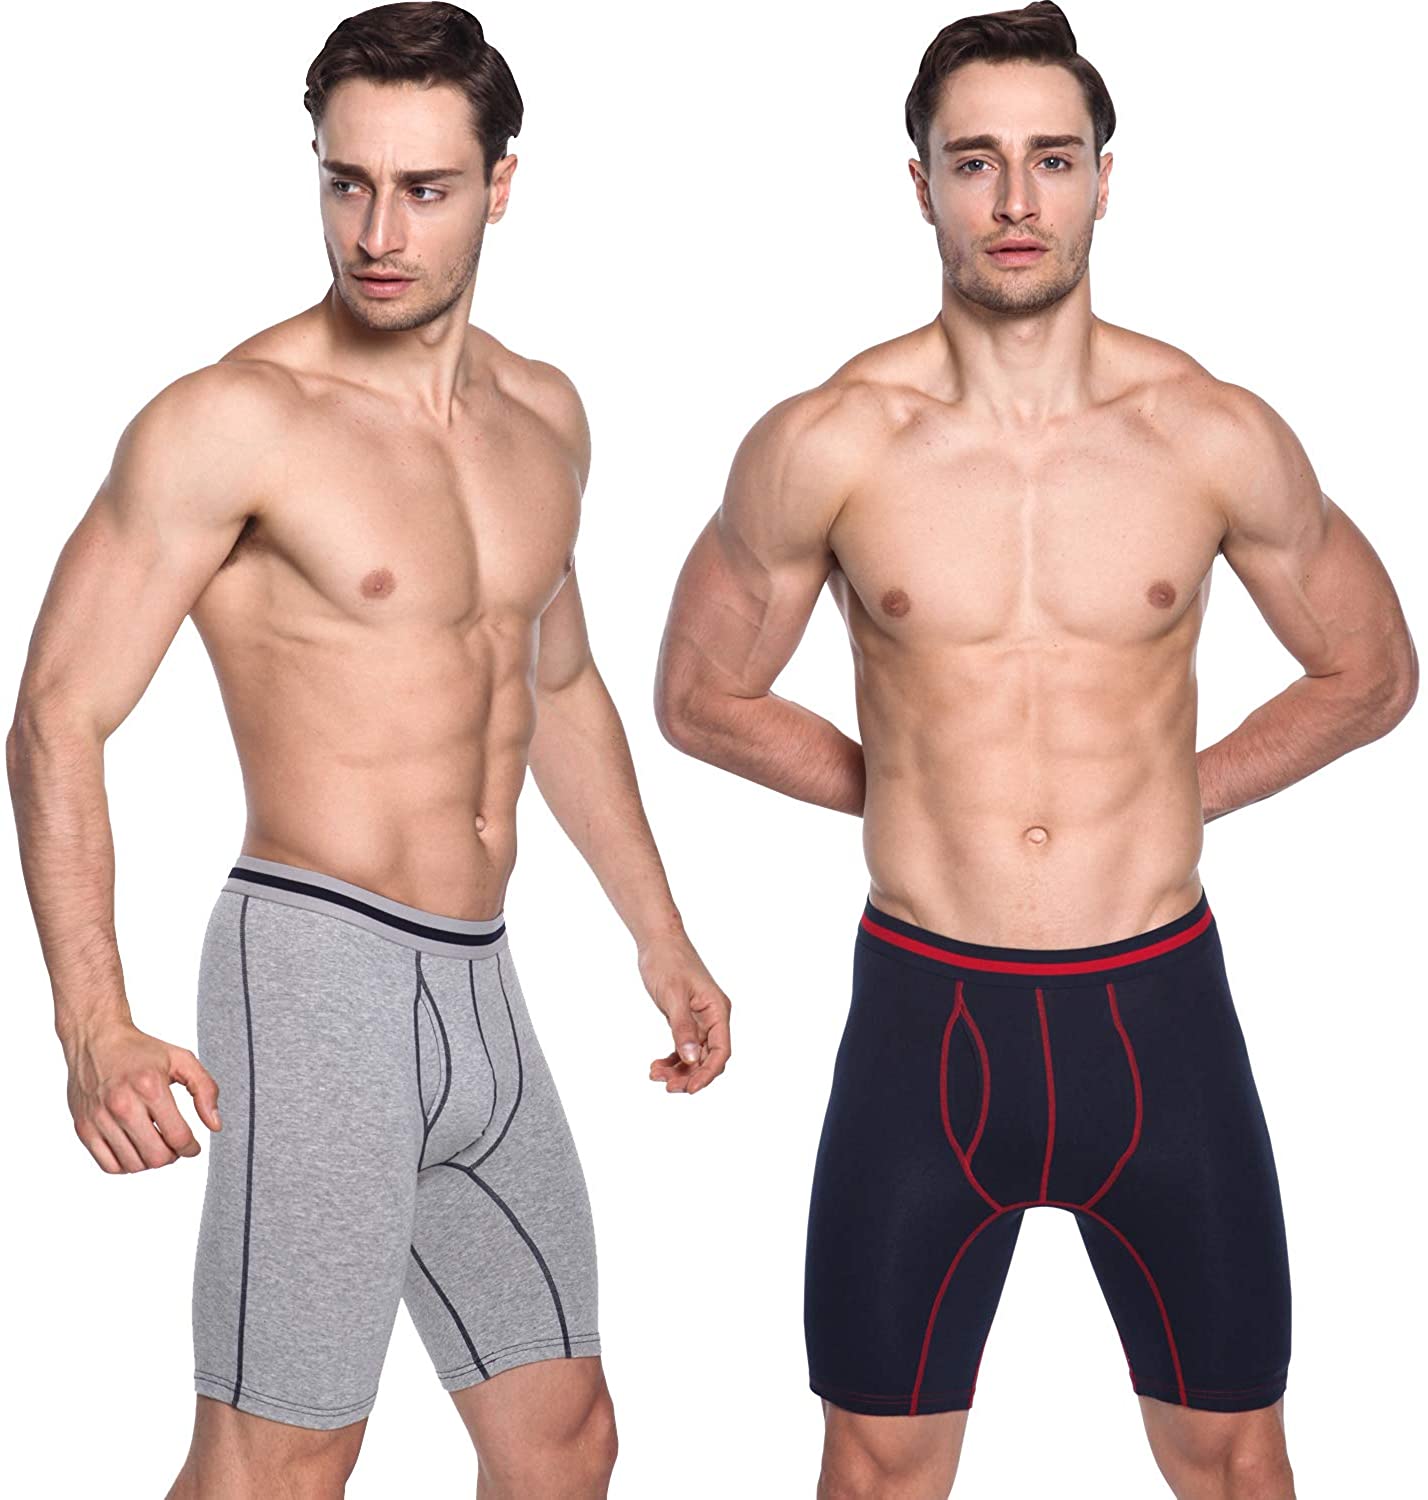 3 Pack Men's Long Leg Boxer Shorts Briefs Cotton Multipack Open Fly Pouch Sports Underpants Underwear Panties for Men